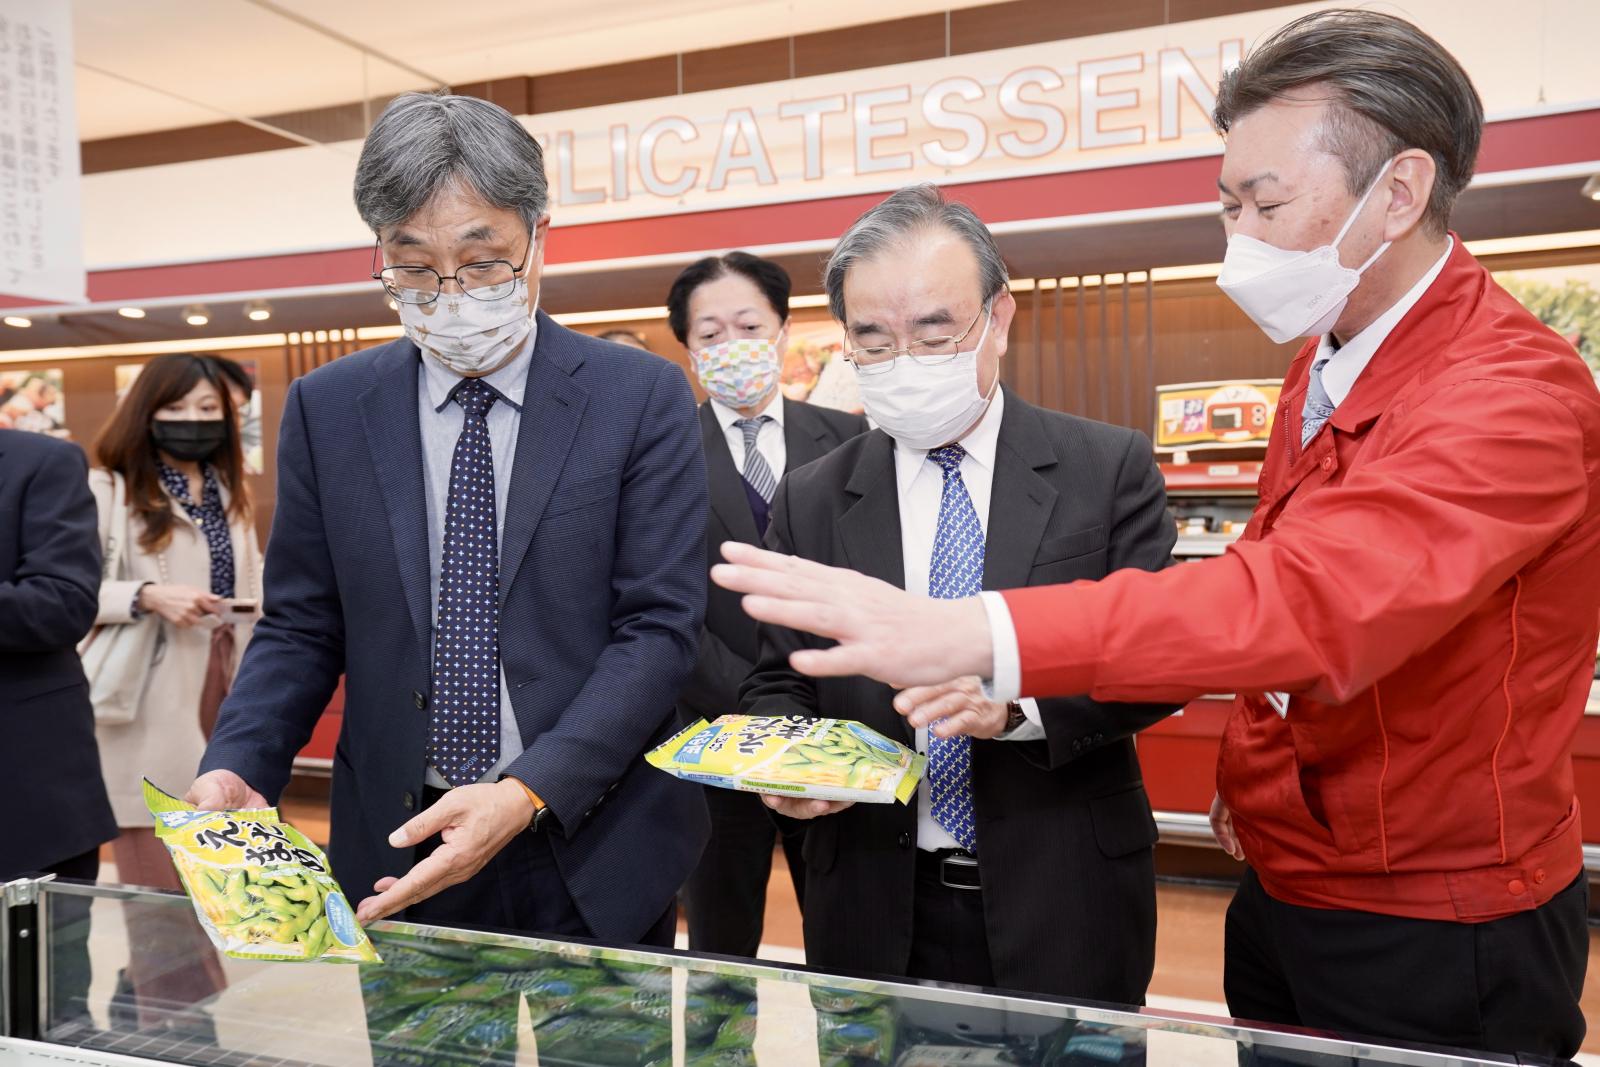 olympic超市人員向陳駿季副主委等人展示該超市門市販售臺灣冷凍毛豆